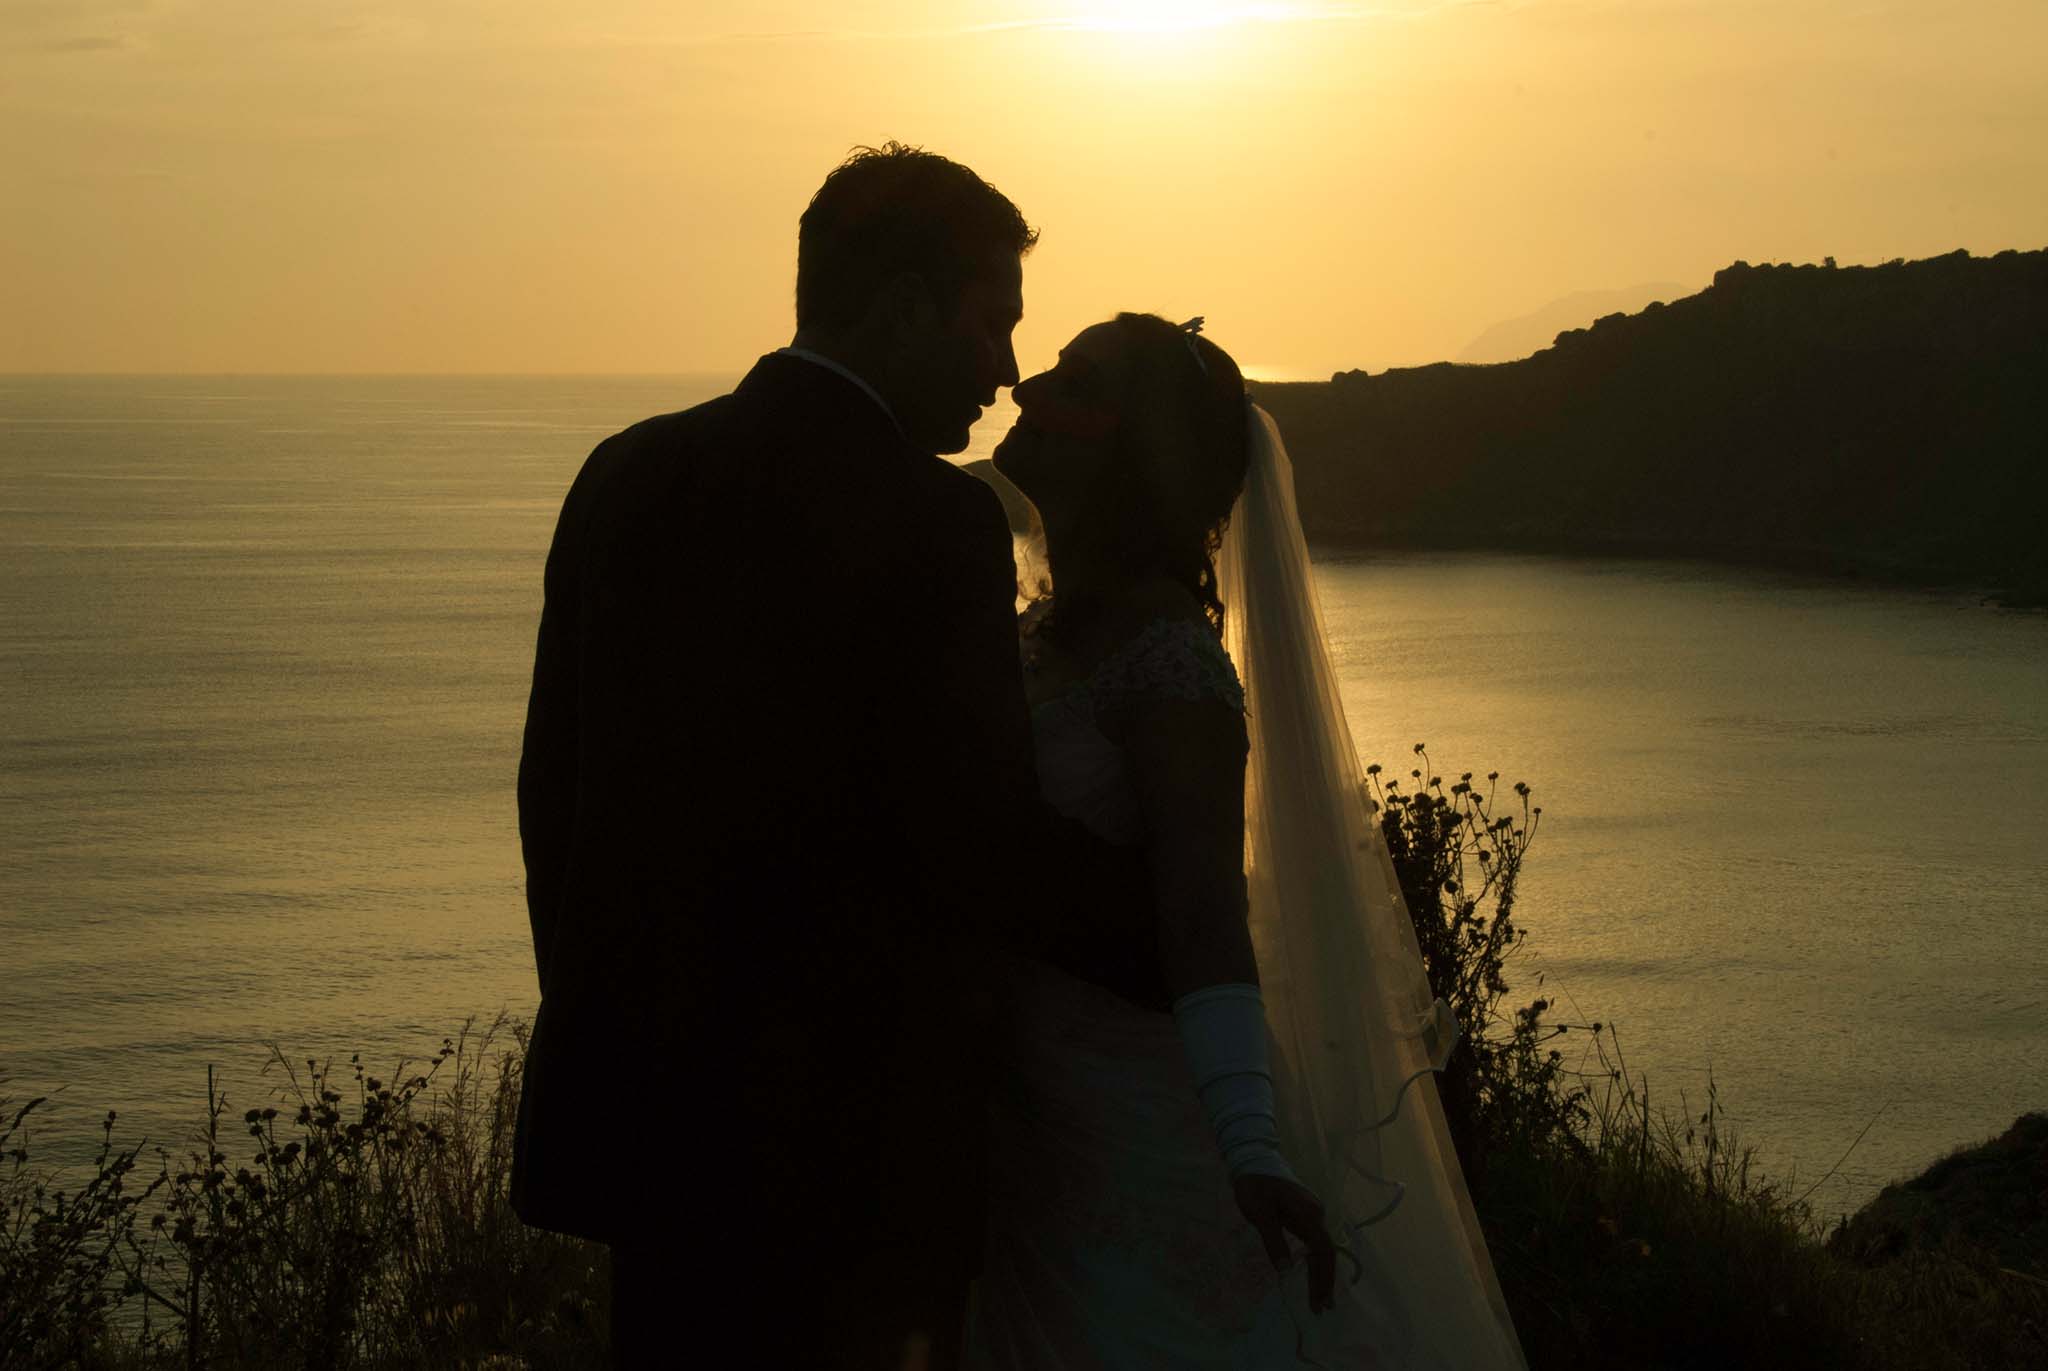 Wedding intimate portrait. Servizio fotografico matrimonio in Sicilia. Sposi al tramonto, Milazzo